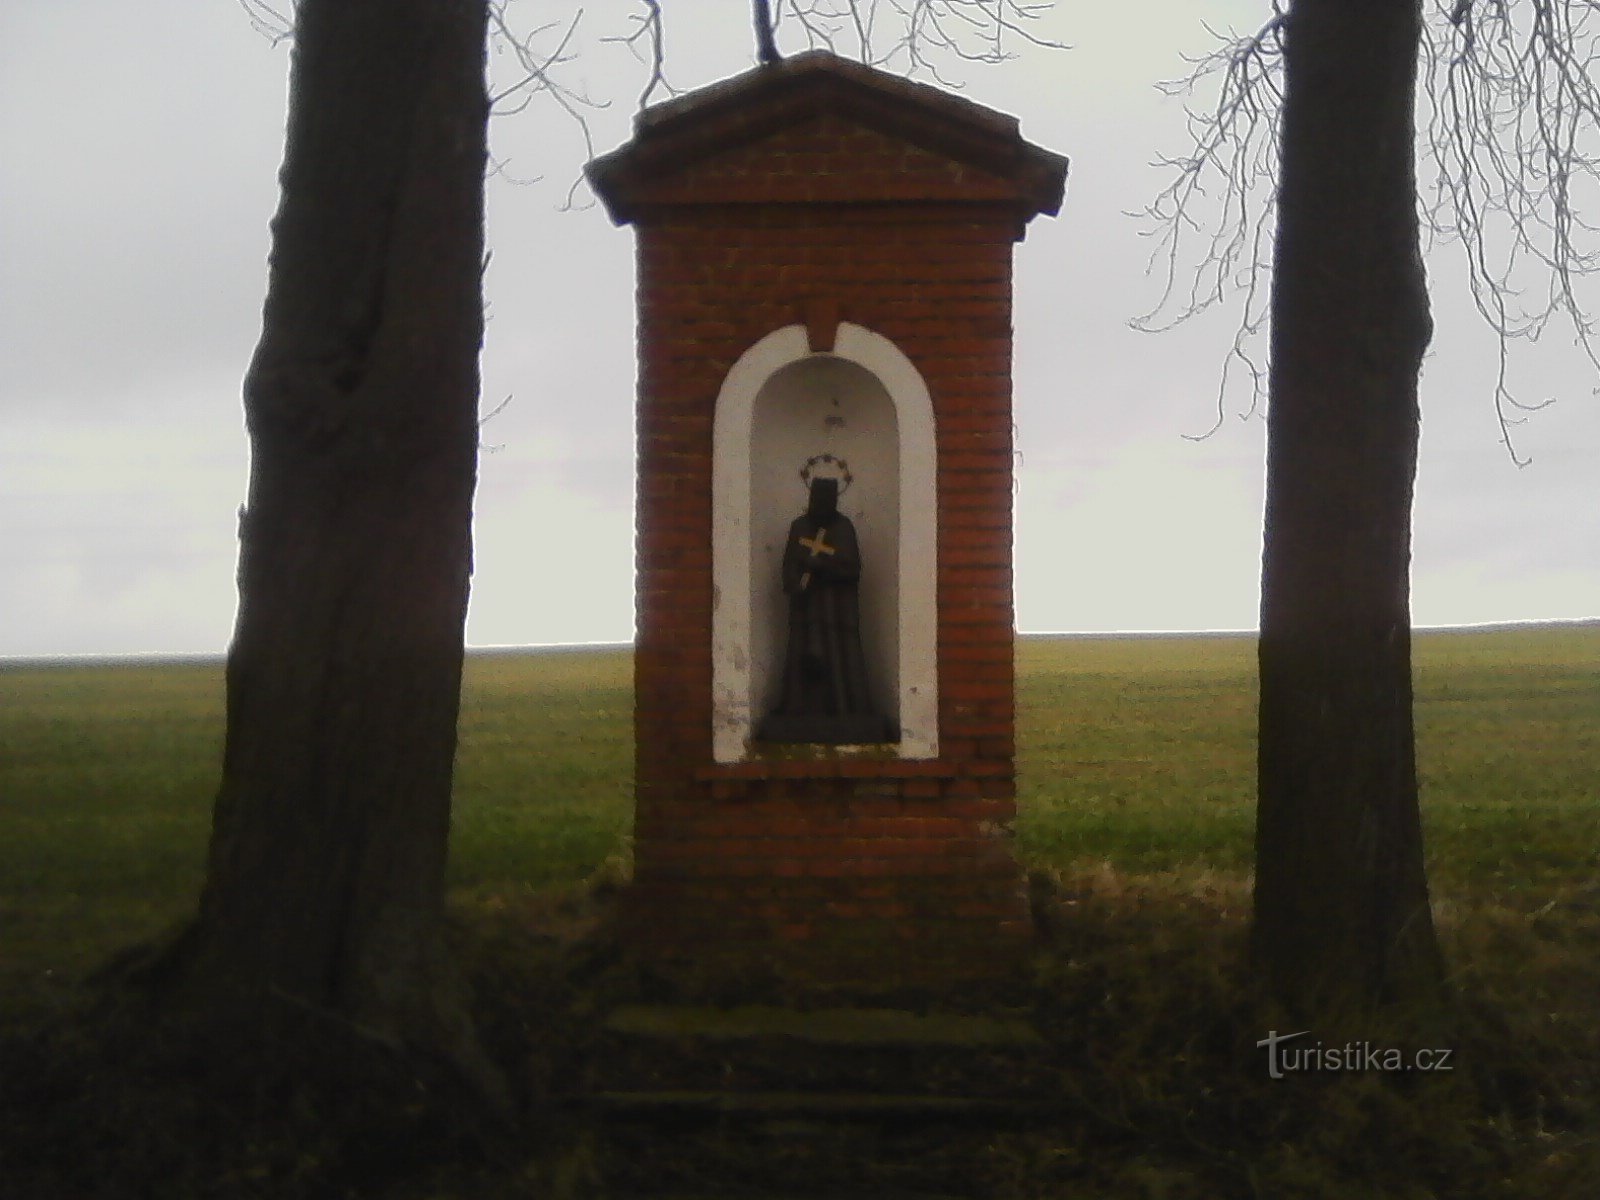 前往 Bedřichov 途中的第二座小教堂，里面有一尊内波穆克的圣约翰雕像。